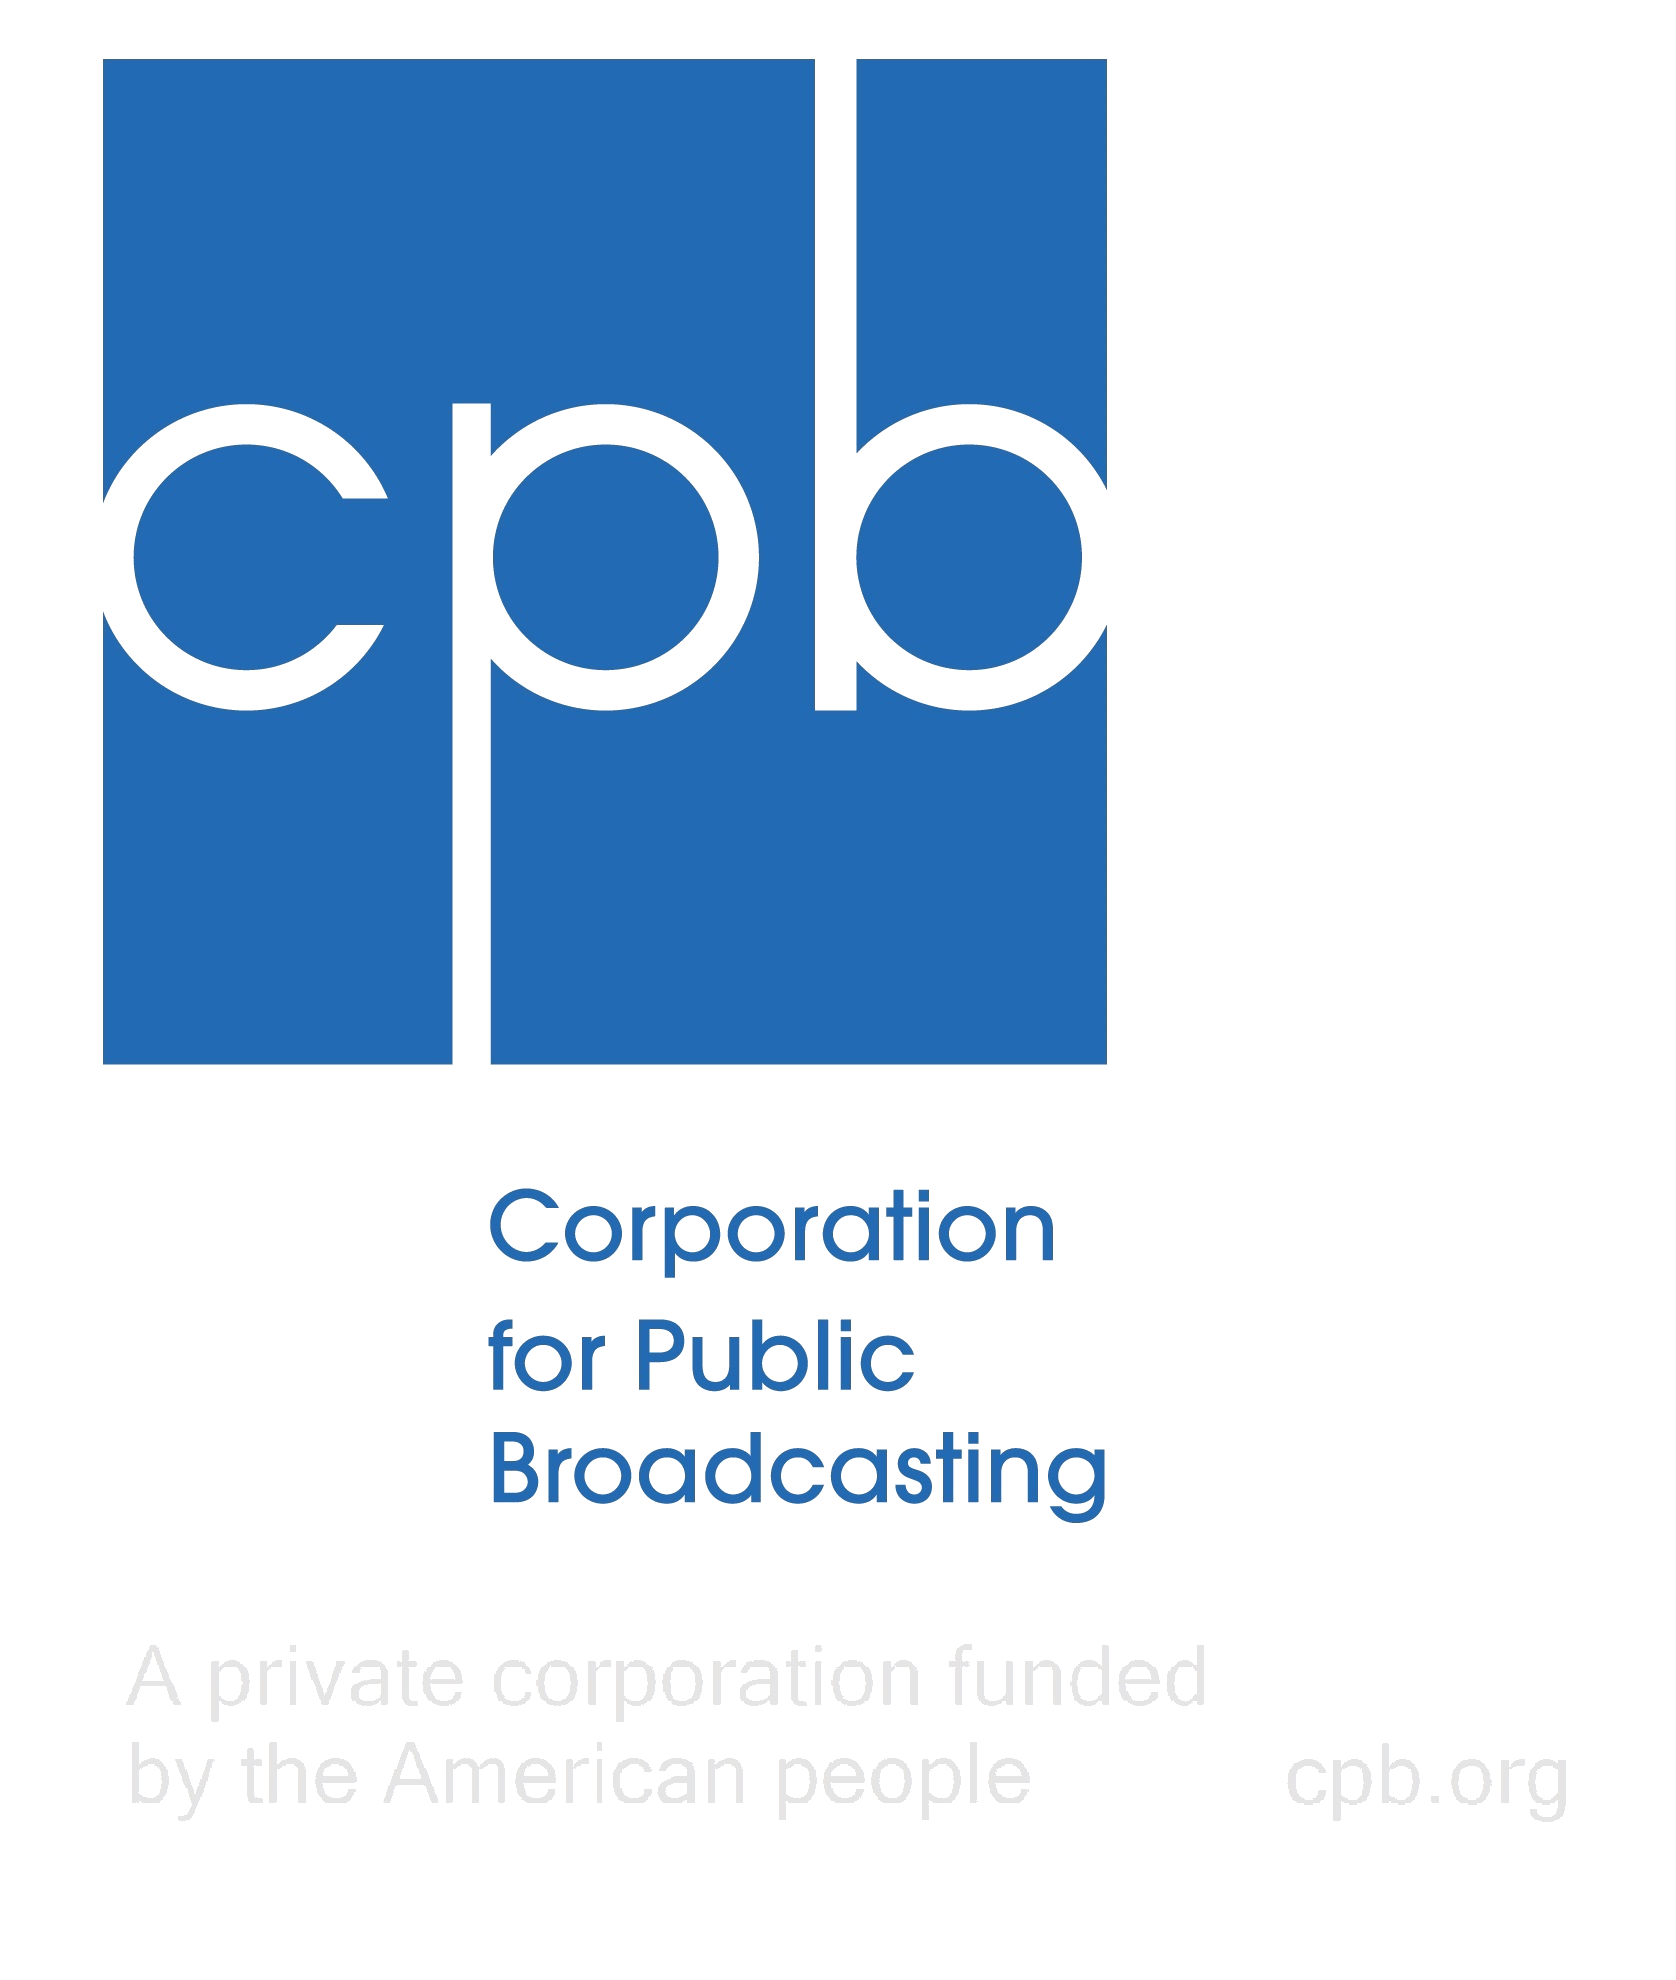 CPB Logo - CPB 2002 Logo.png